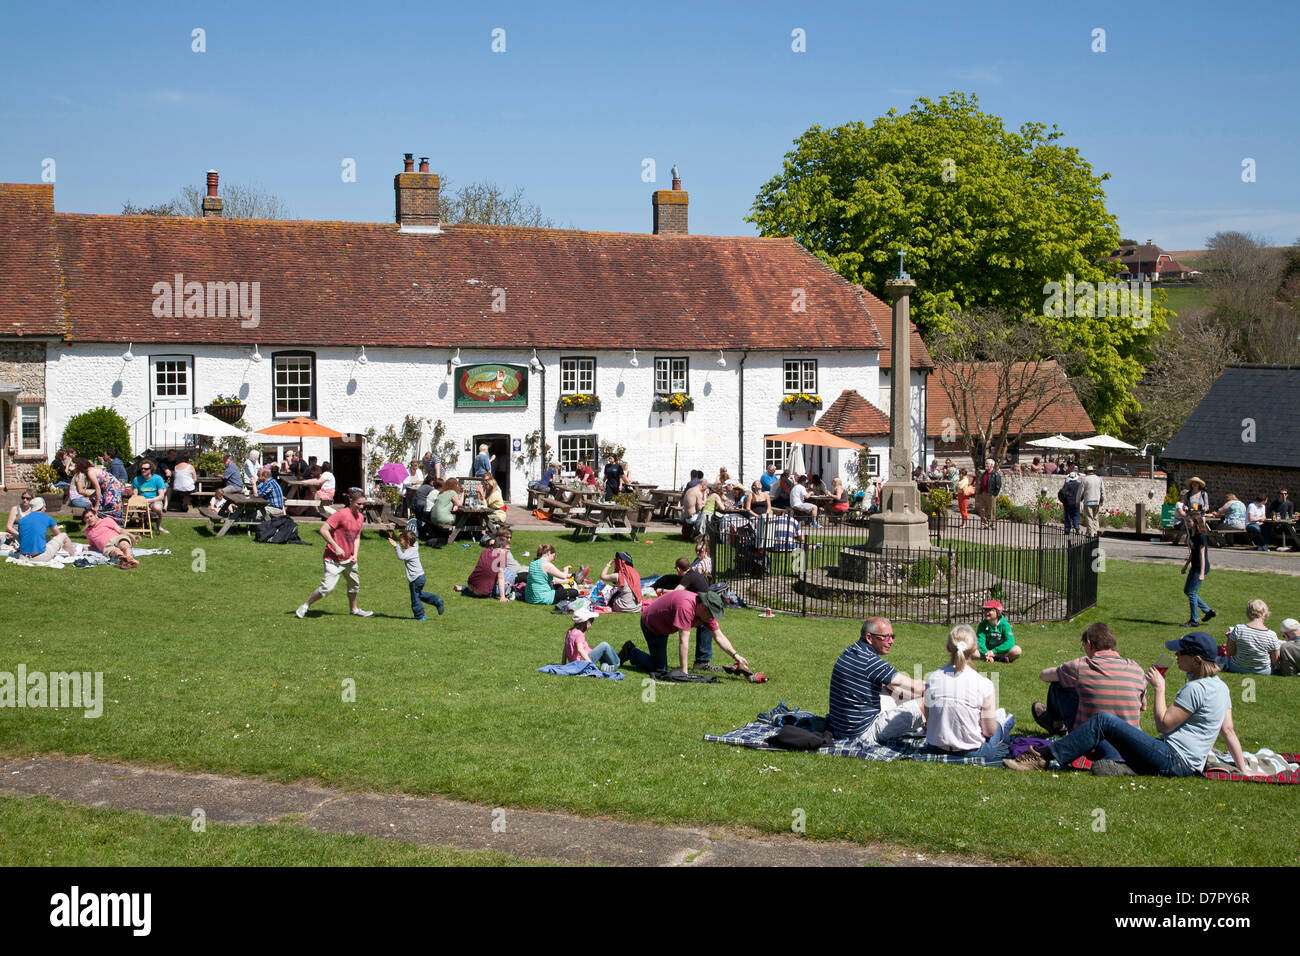 Englisch Dorfkneipe der Tiger im Osten Dean, East Sussex. Beschäftigt an einem Feiertag Montag Ppl sitzen auf dem Grün und die Sonne genießen. Stockfoto